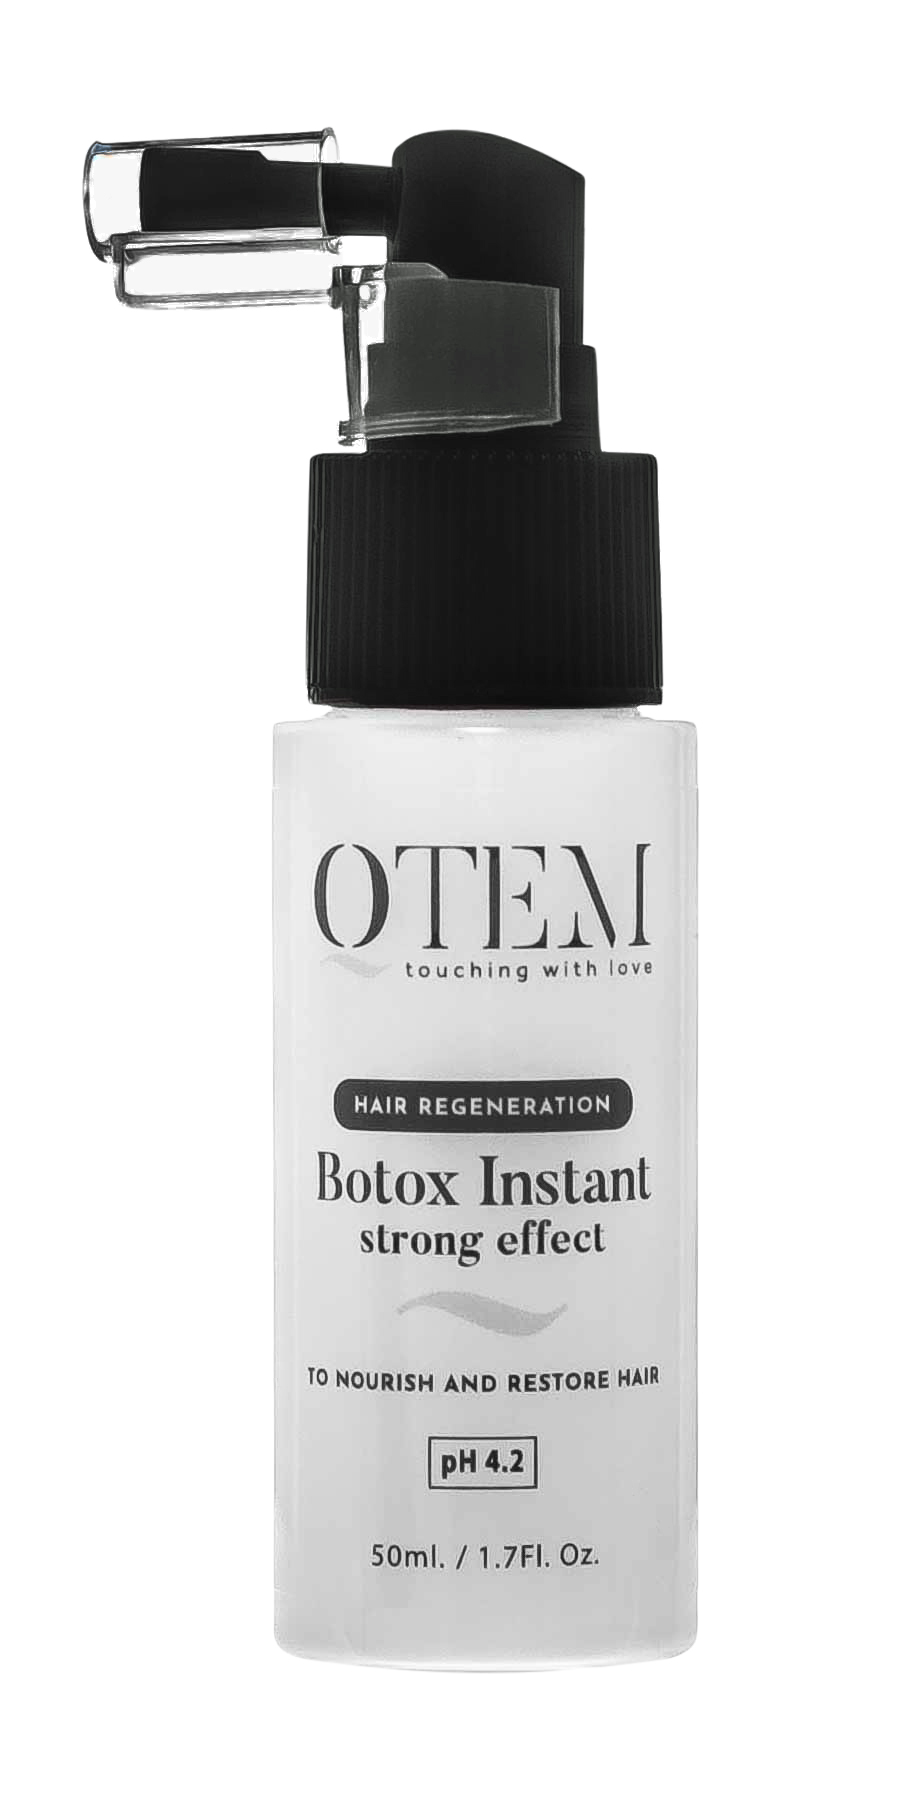 Qtem Восстанавливающий холодный спрей-филлер для волос Instant Strong Effect, 50 мл (Qtem, Hair Regeneration)